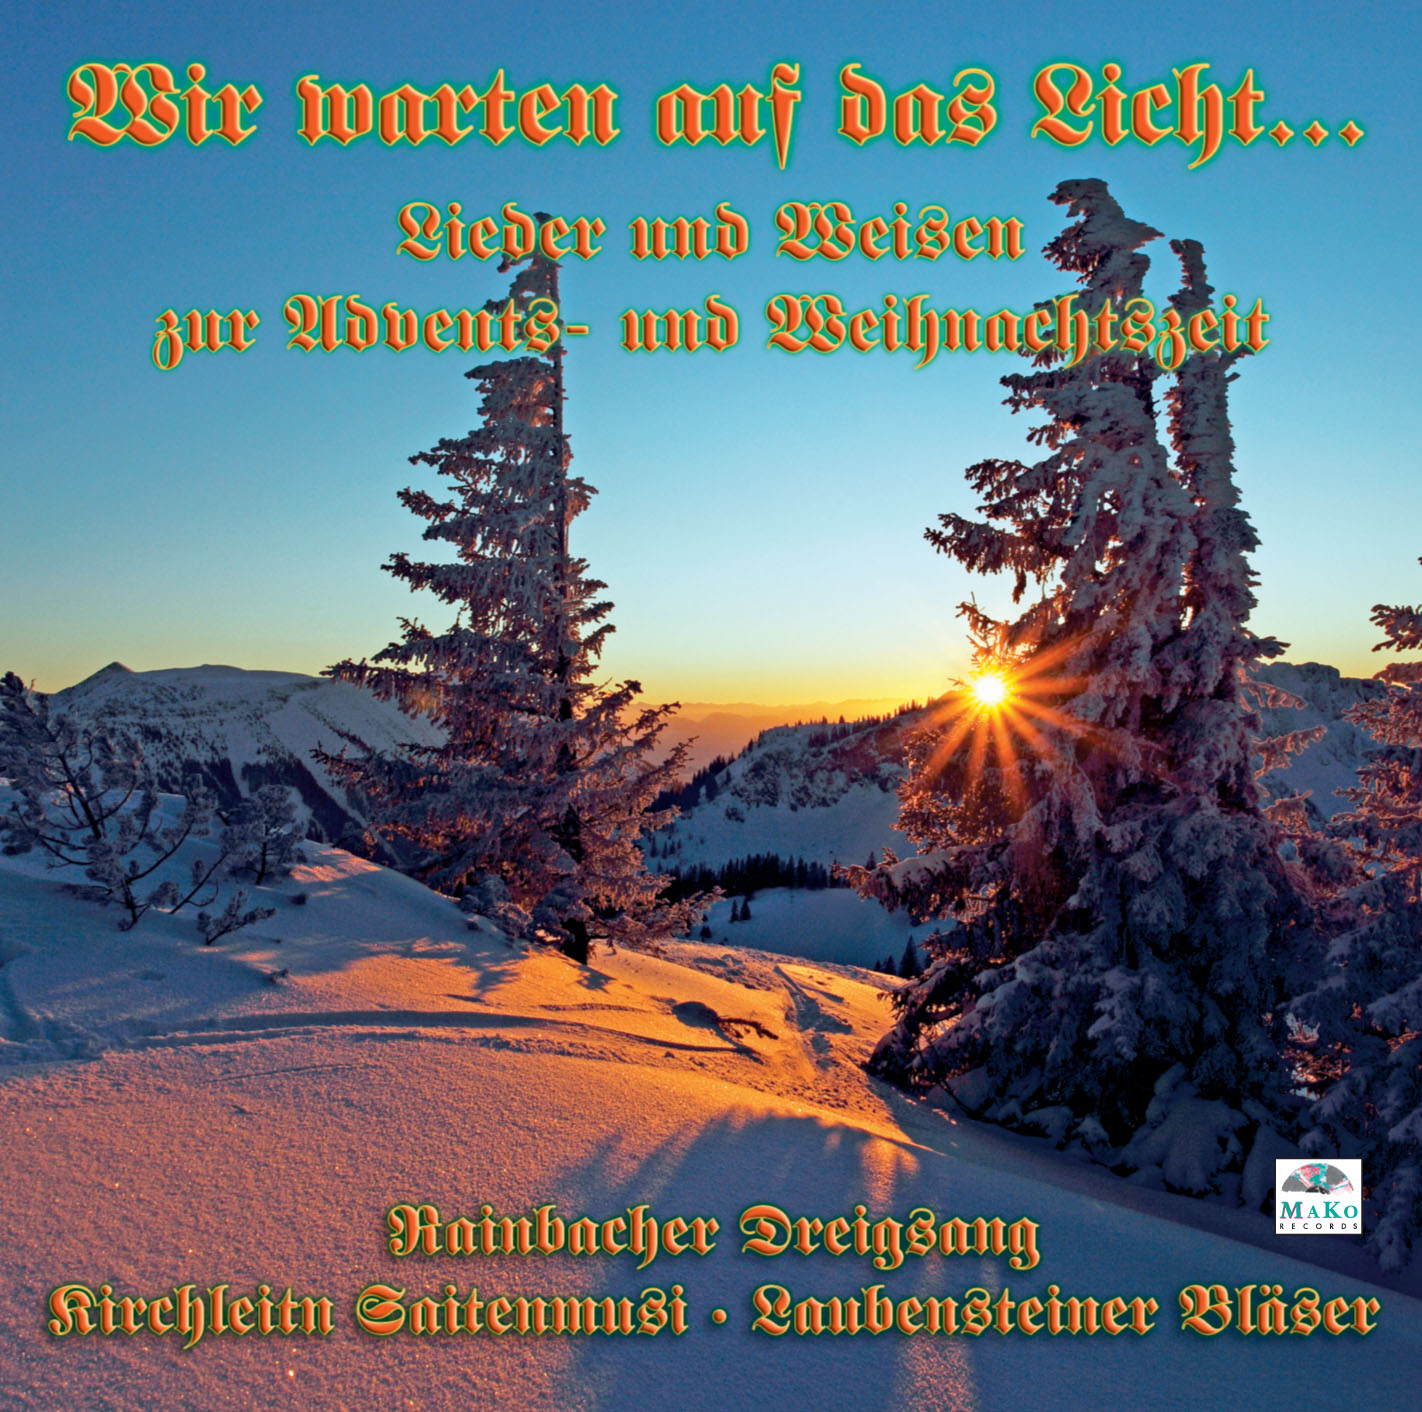 Bild von CD-859, "Wir warten auf das Licht" - Rainbacher Dreigsang, Kirchleitn Saitenmusi, Laubensteiner Bläser